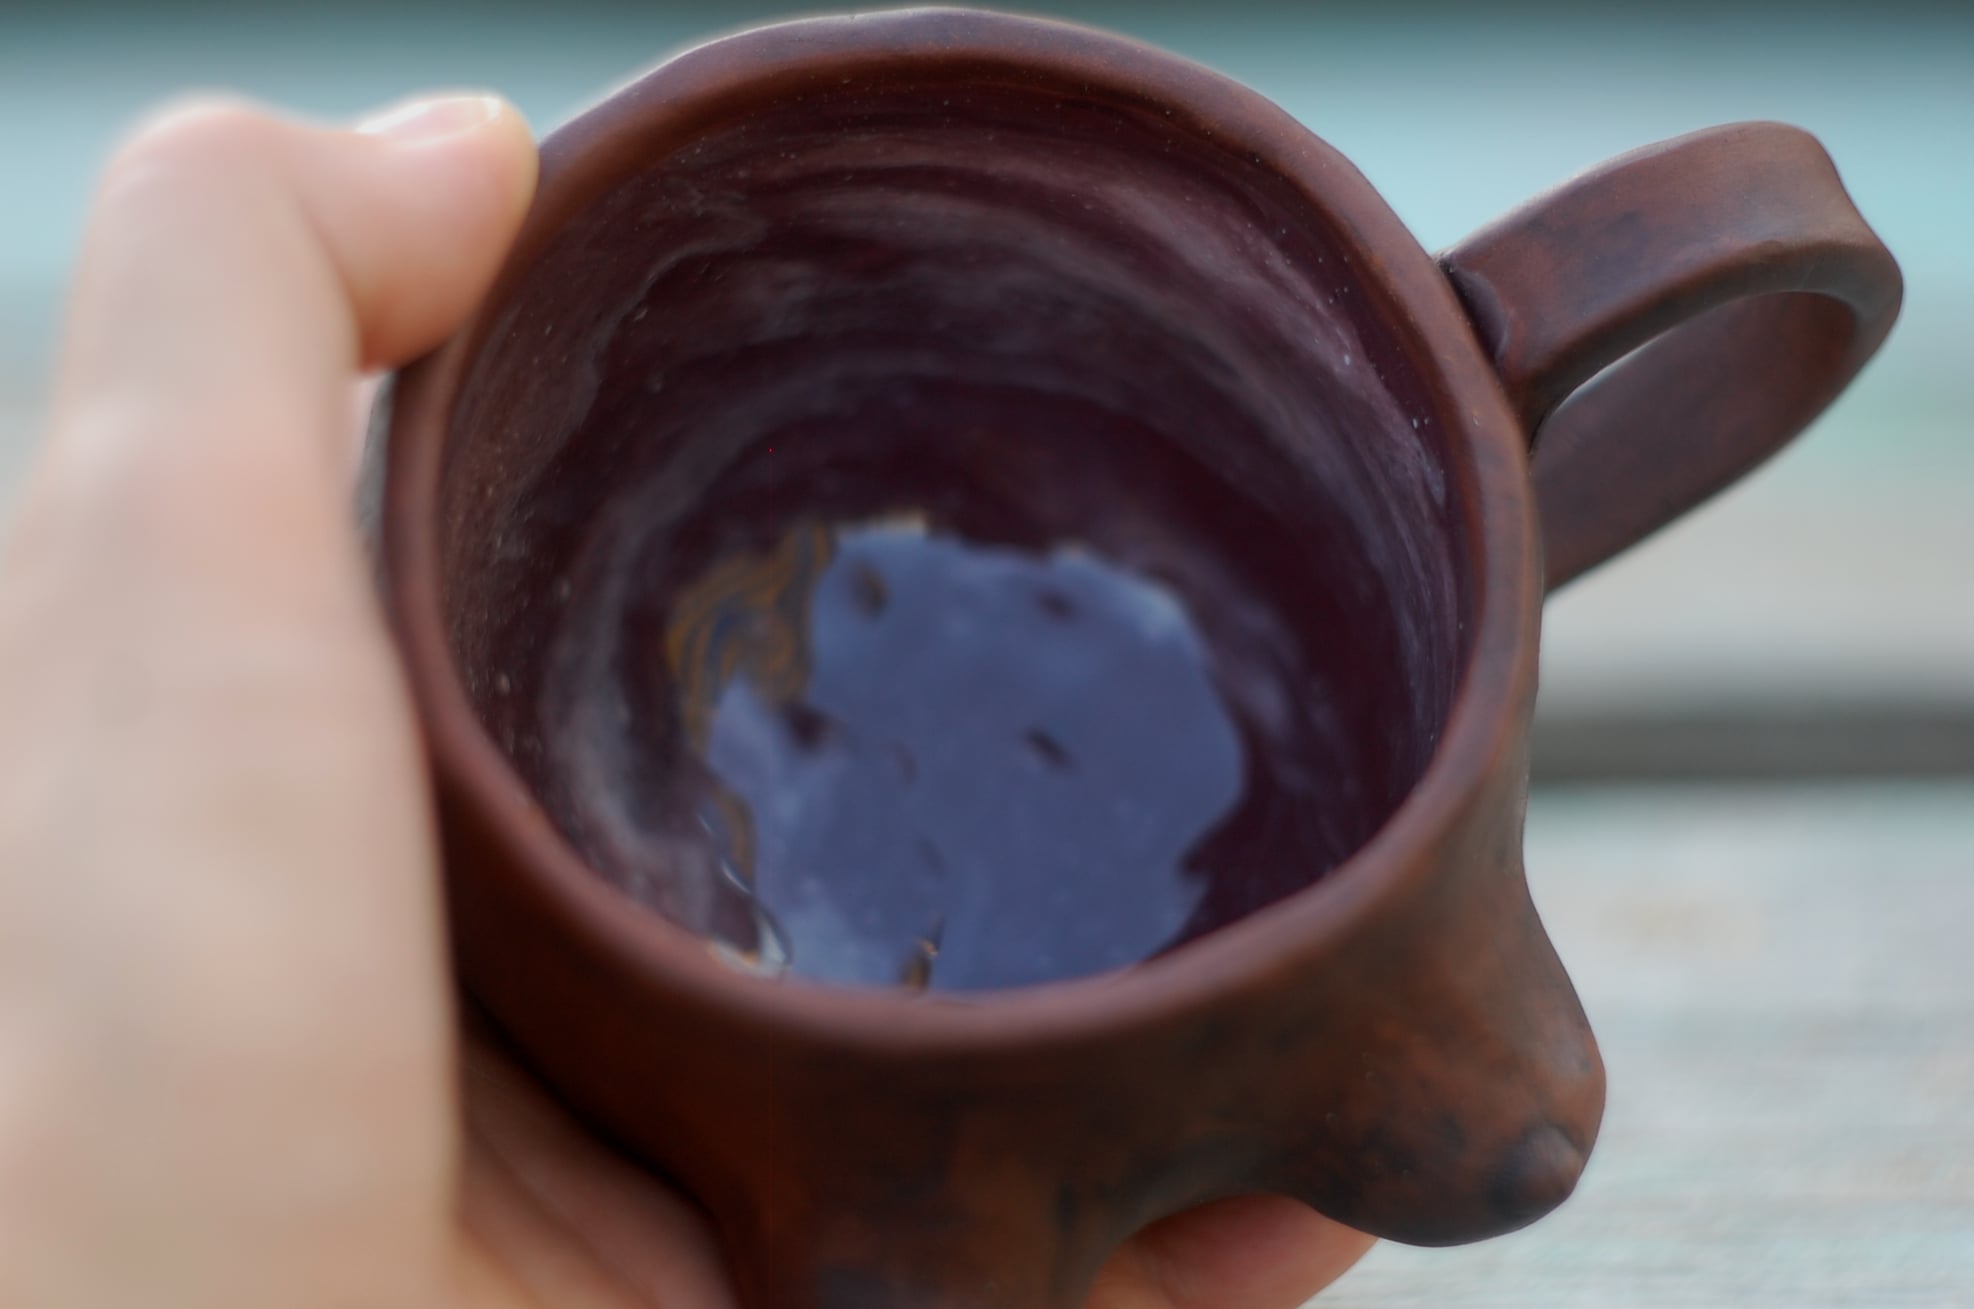 Pottery breast mug (boobs mug) for coffee and tea w/ handle ~11oz